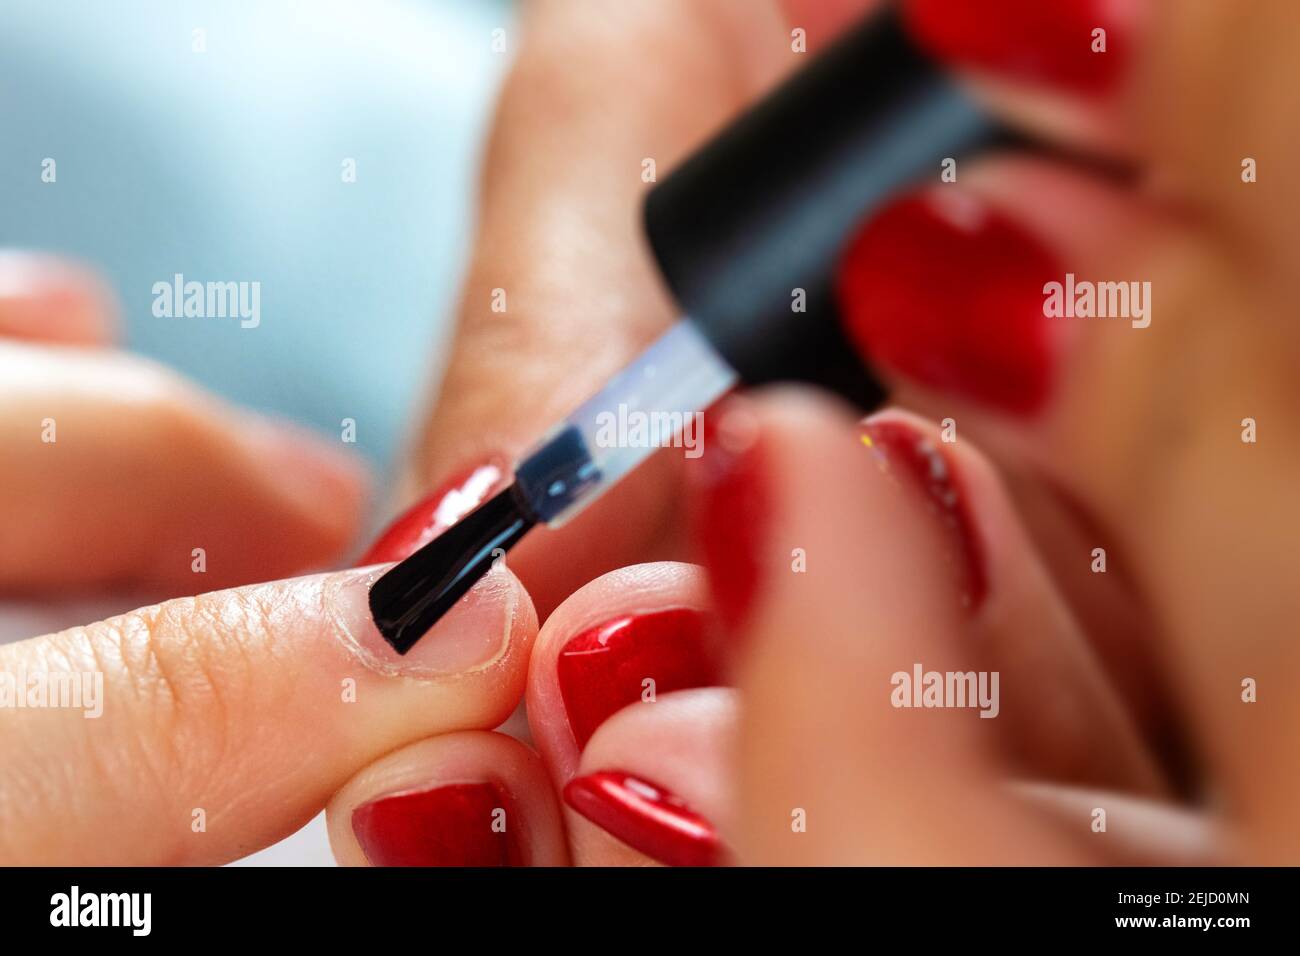 Gros plan d'un travail de vernis à ongles avec les mains des femmes Banque D'Images